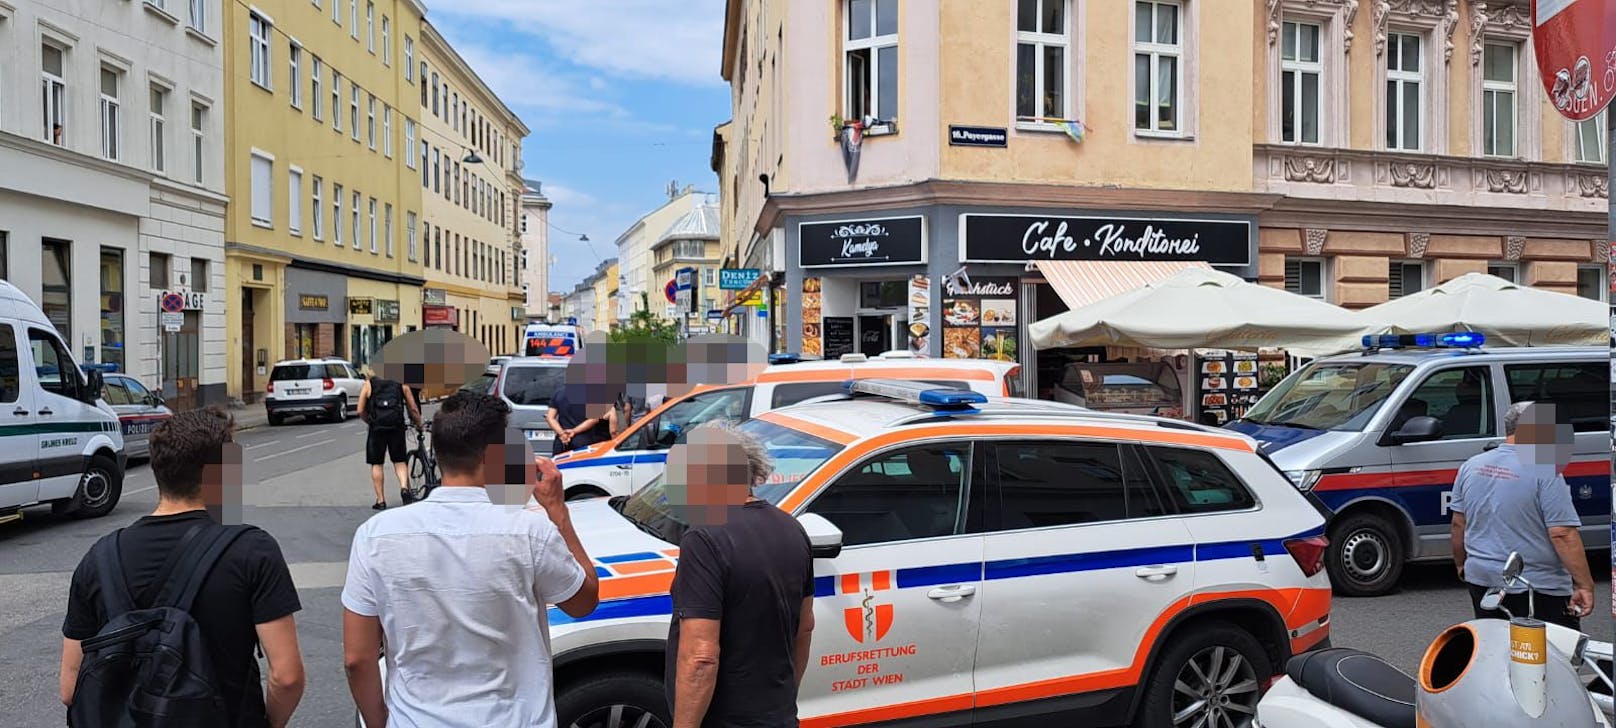 In einer Wohnung fanden weitere Einsatzkräfte der Wiener Polizei eine 28-jährige Frau mit Stichverletzungen auf